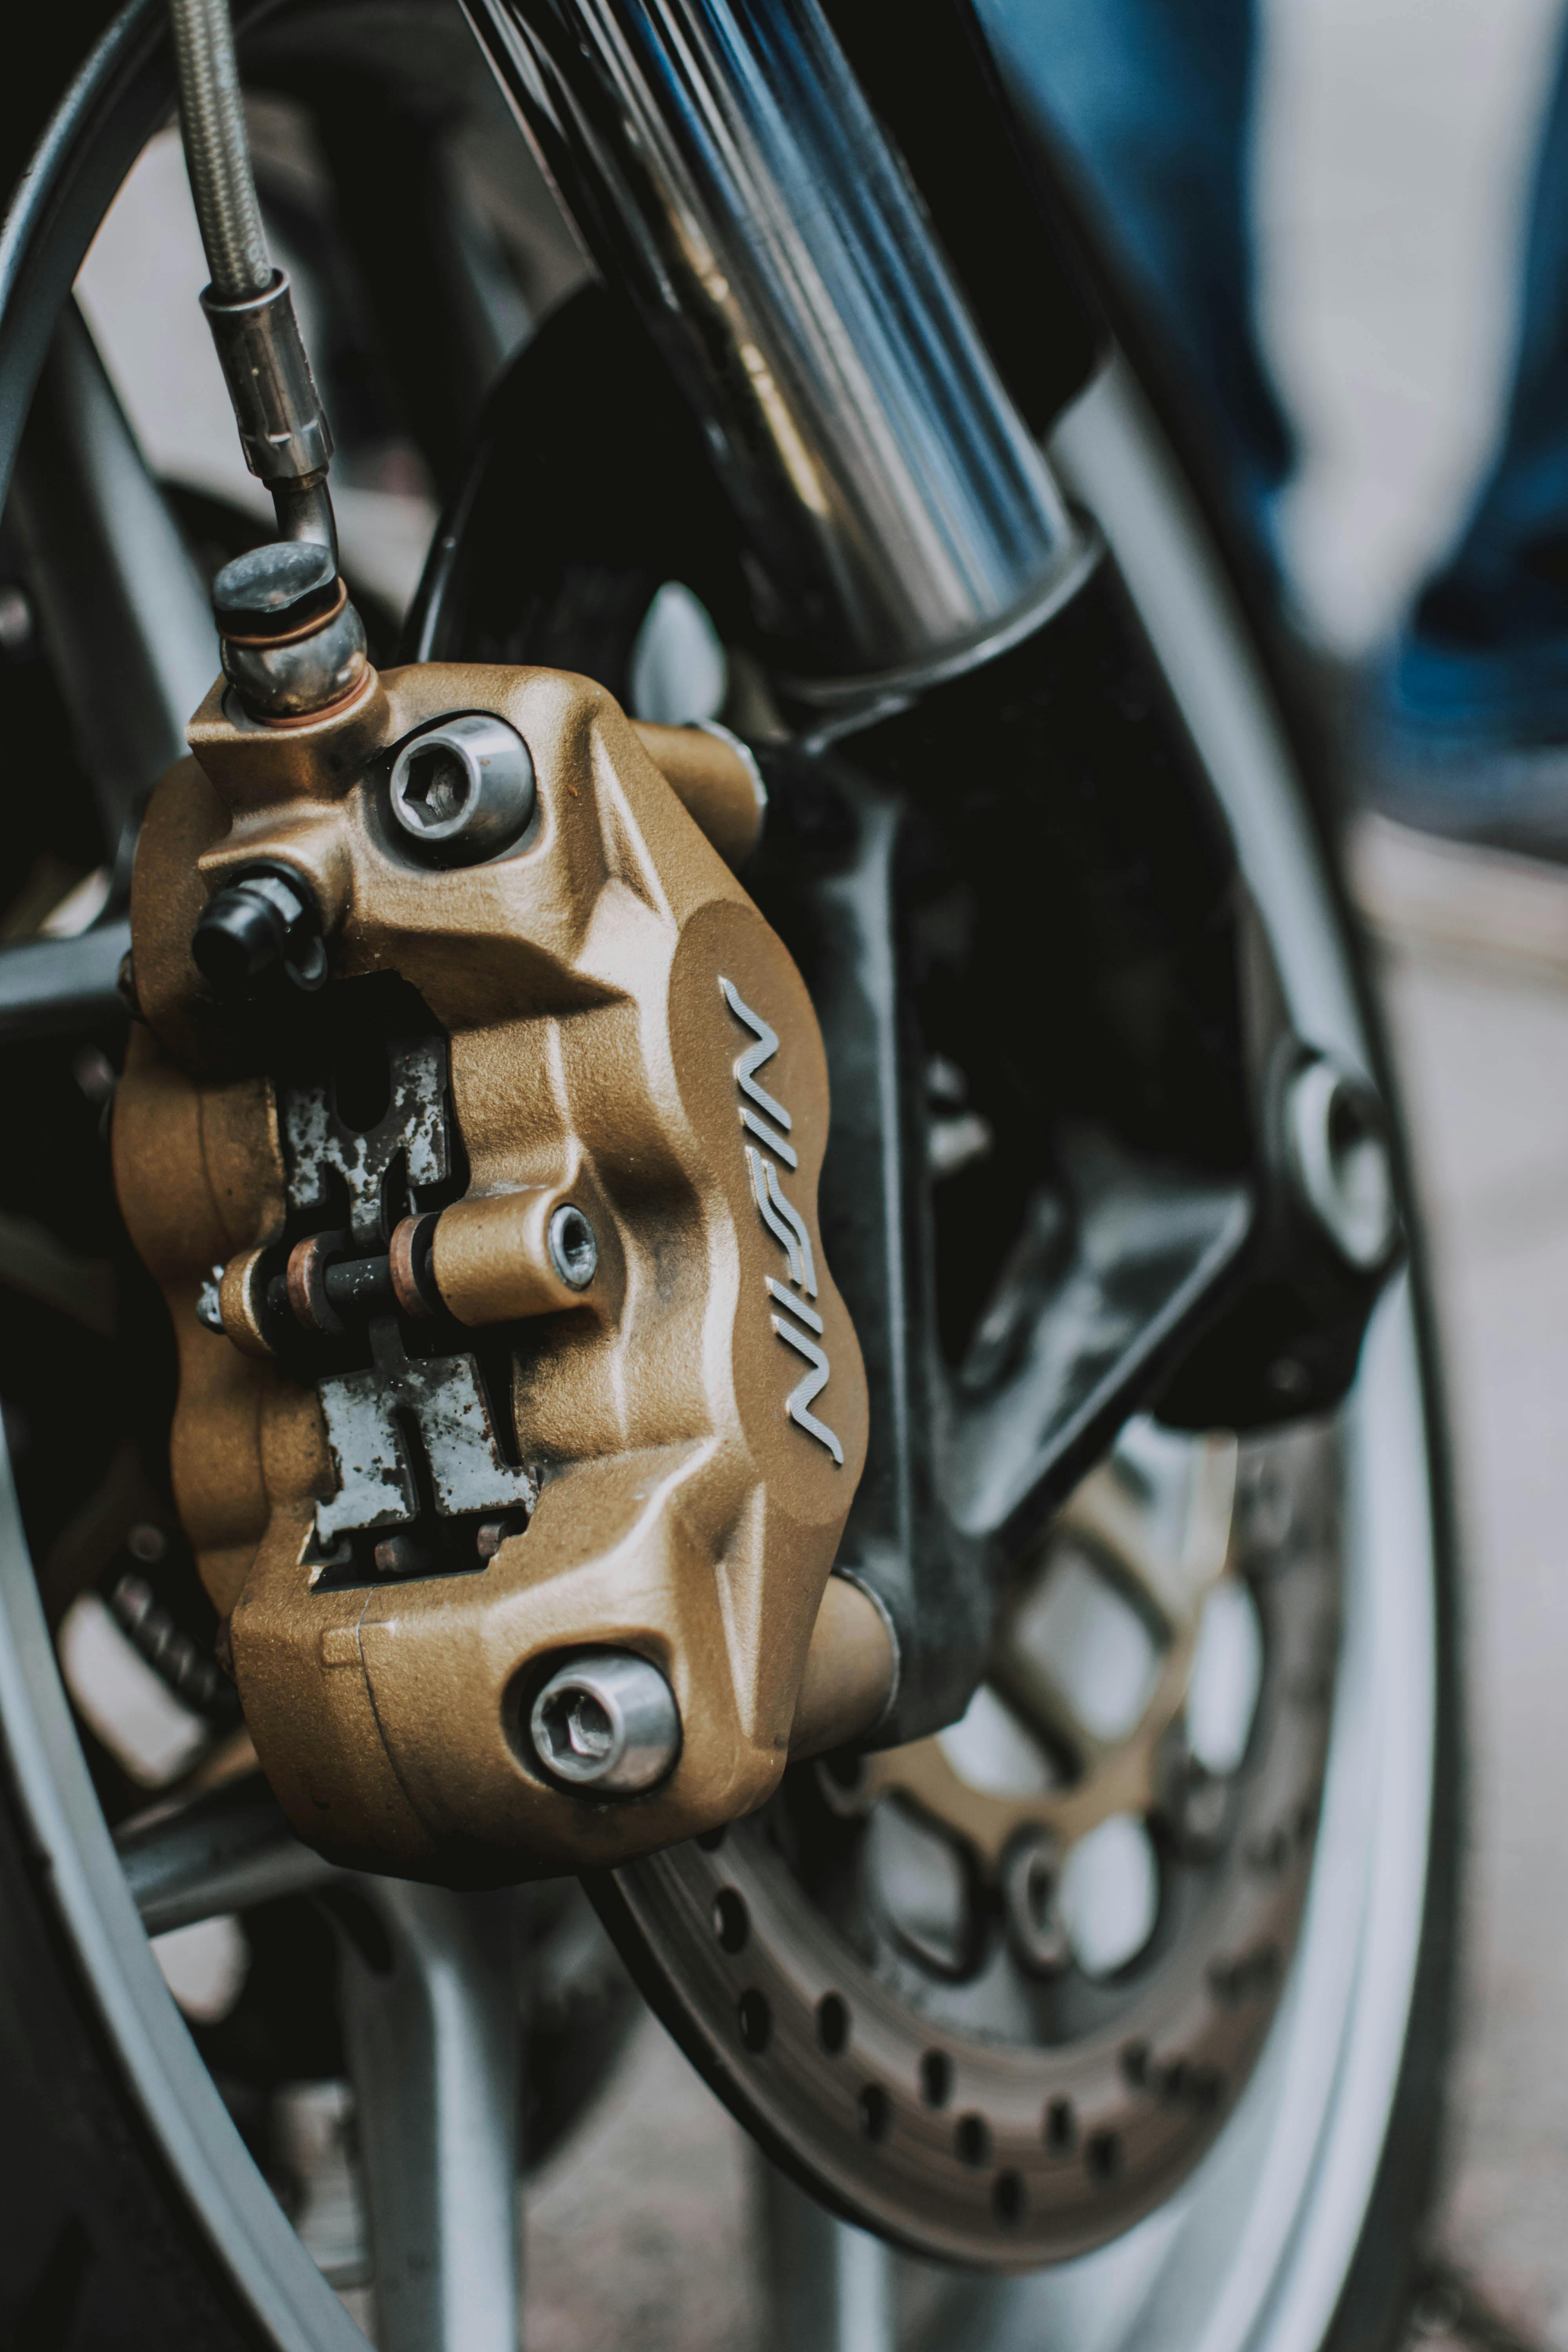 Pedal del freno moto Fotografía de stock - Alamy